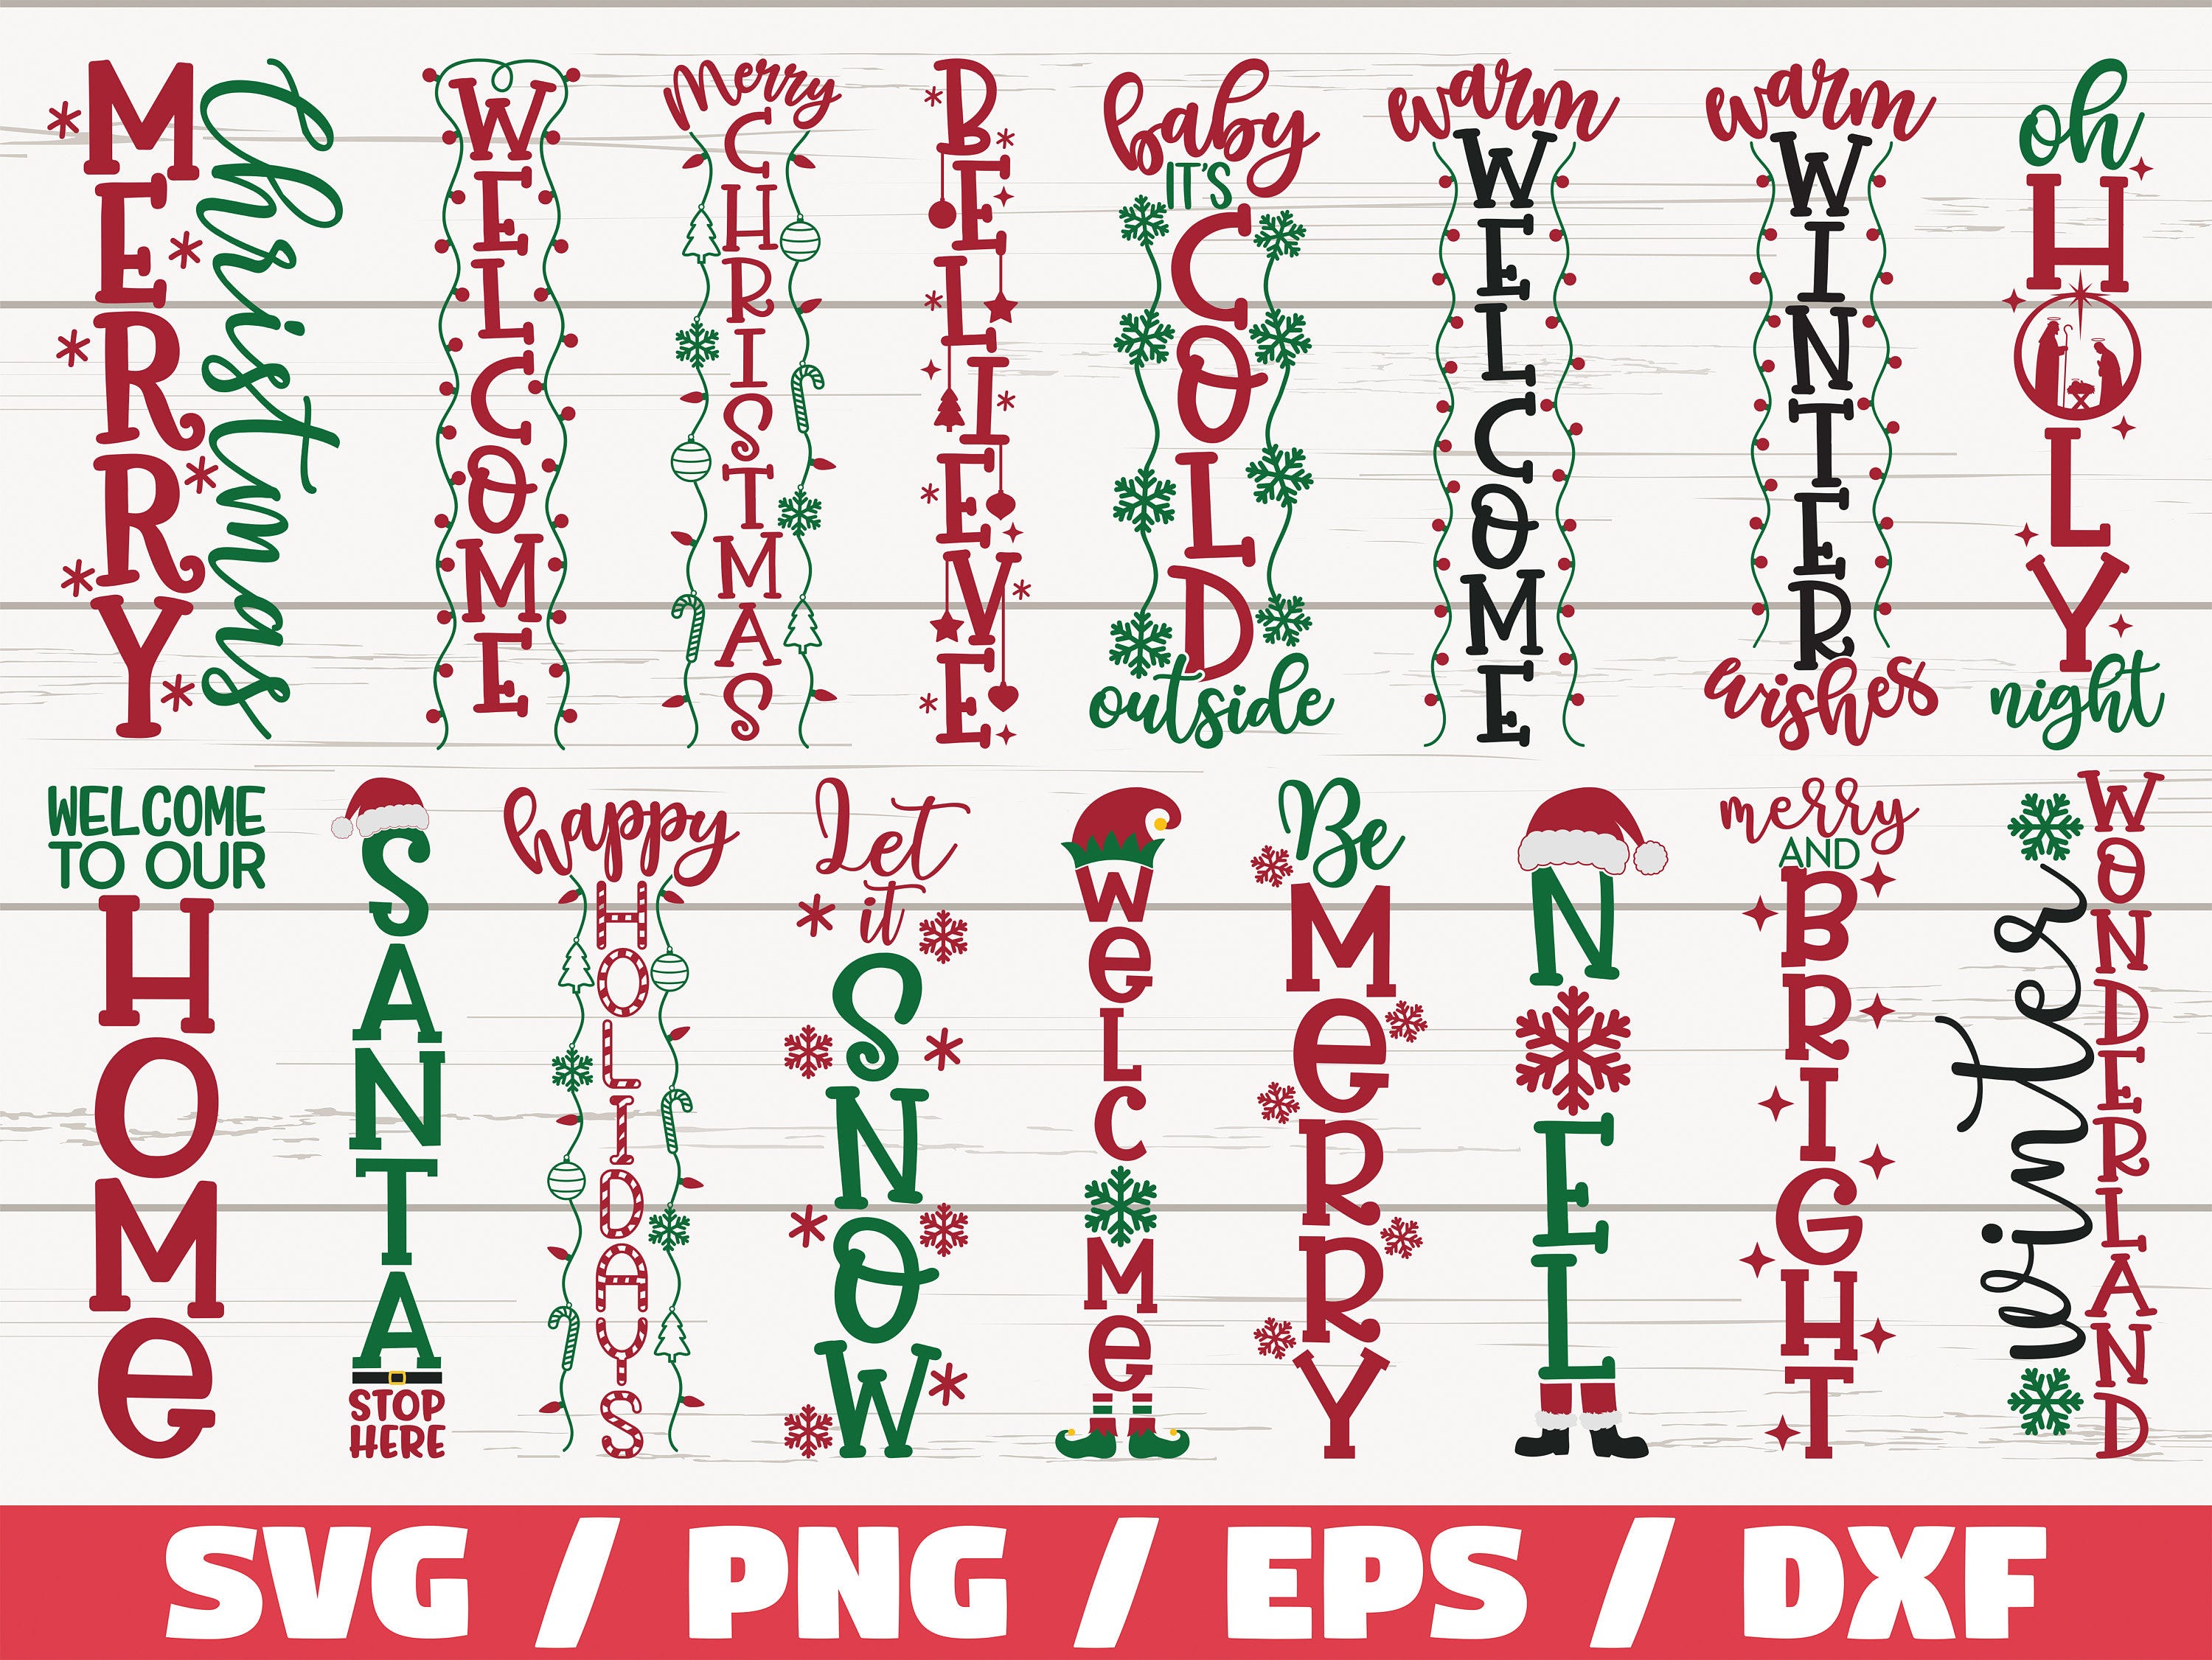 Christmas Porch Signs SVG Bundle / Cut File / Cricut / Clip art / Commercial Use /  Christmas Home Decoration / Winter Porch Sign SVG